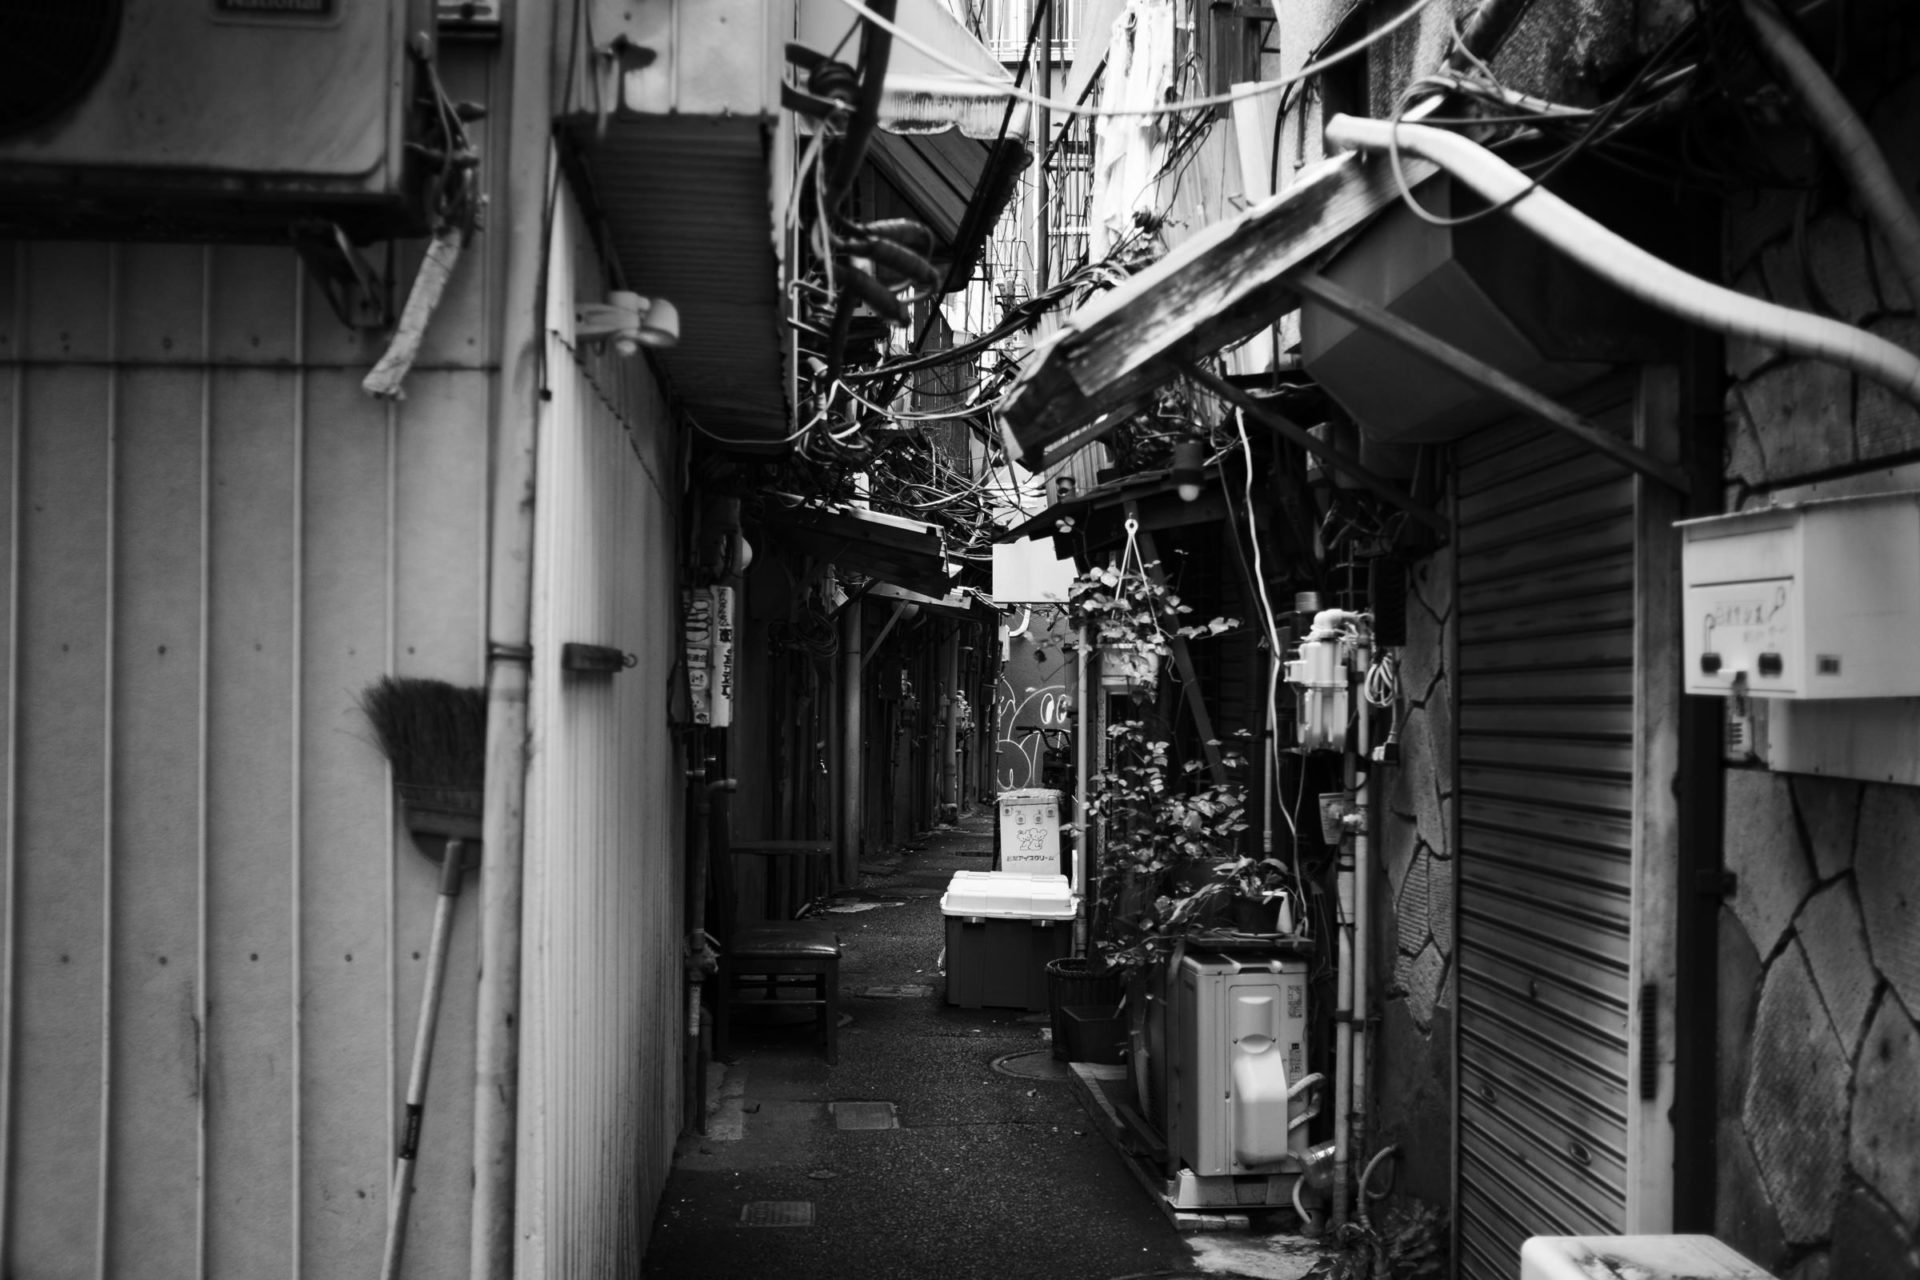 Doburoku Yokocho in Kawasaki, Tokyo's Hidden Neighborhood